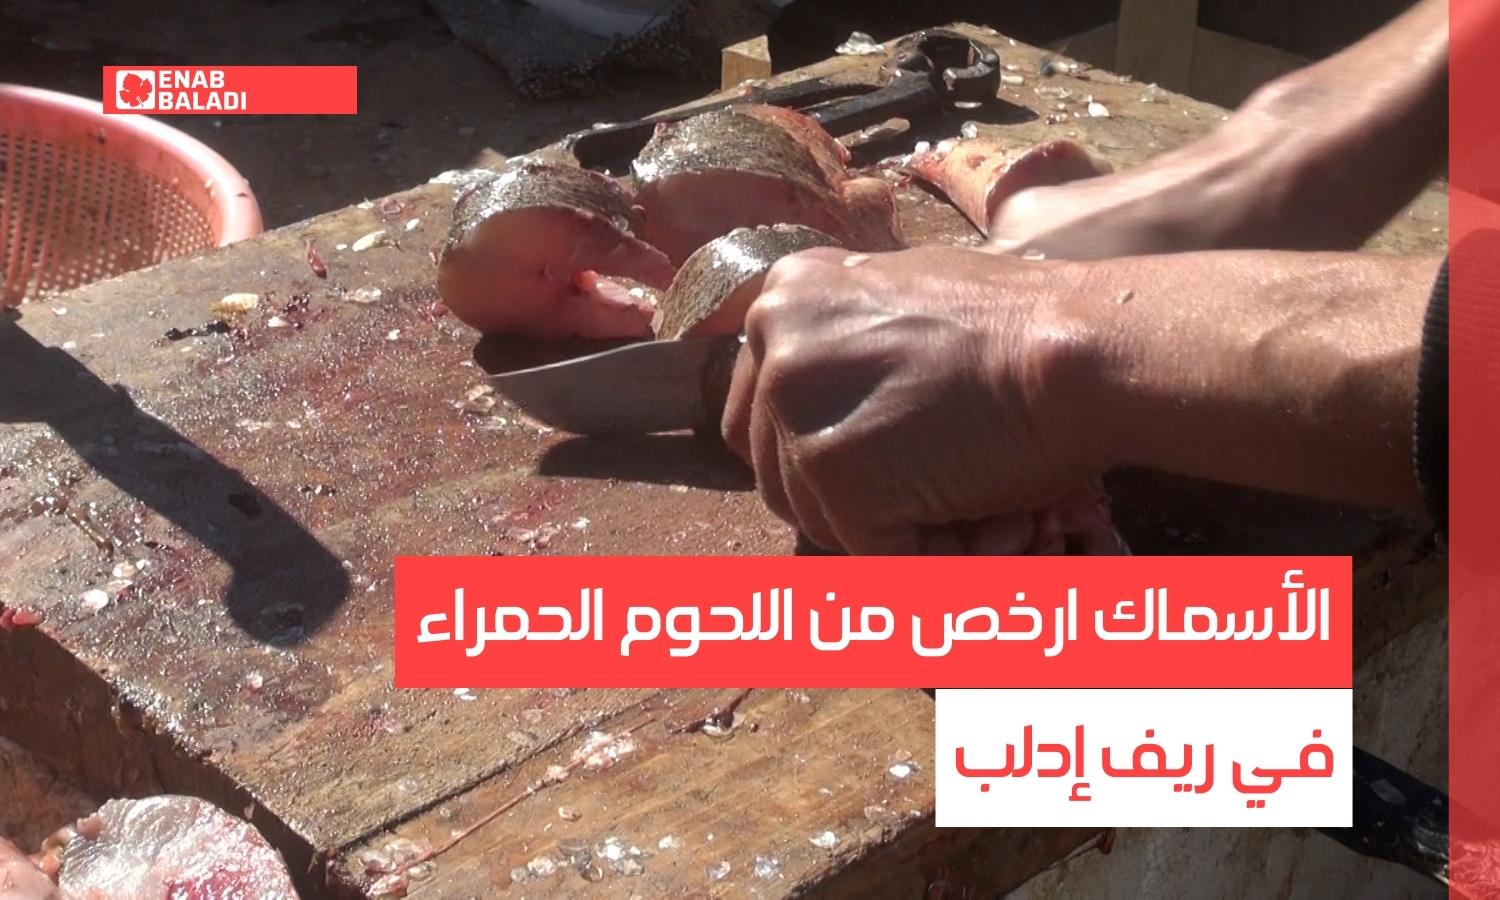 تعويض اللحوم الحمراء بالبيضاء في ريف إدلب